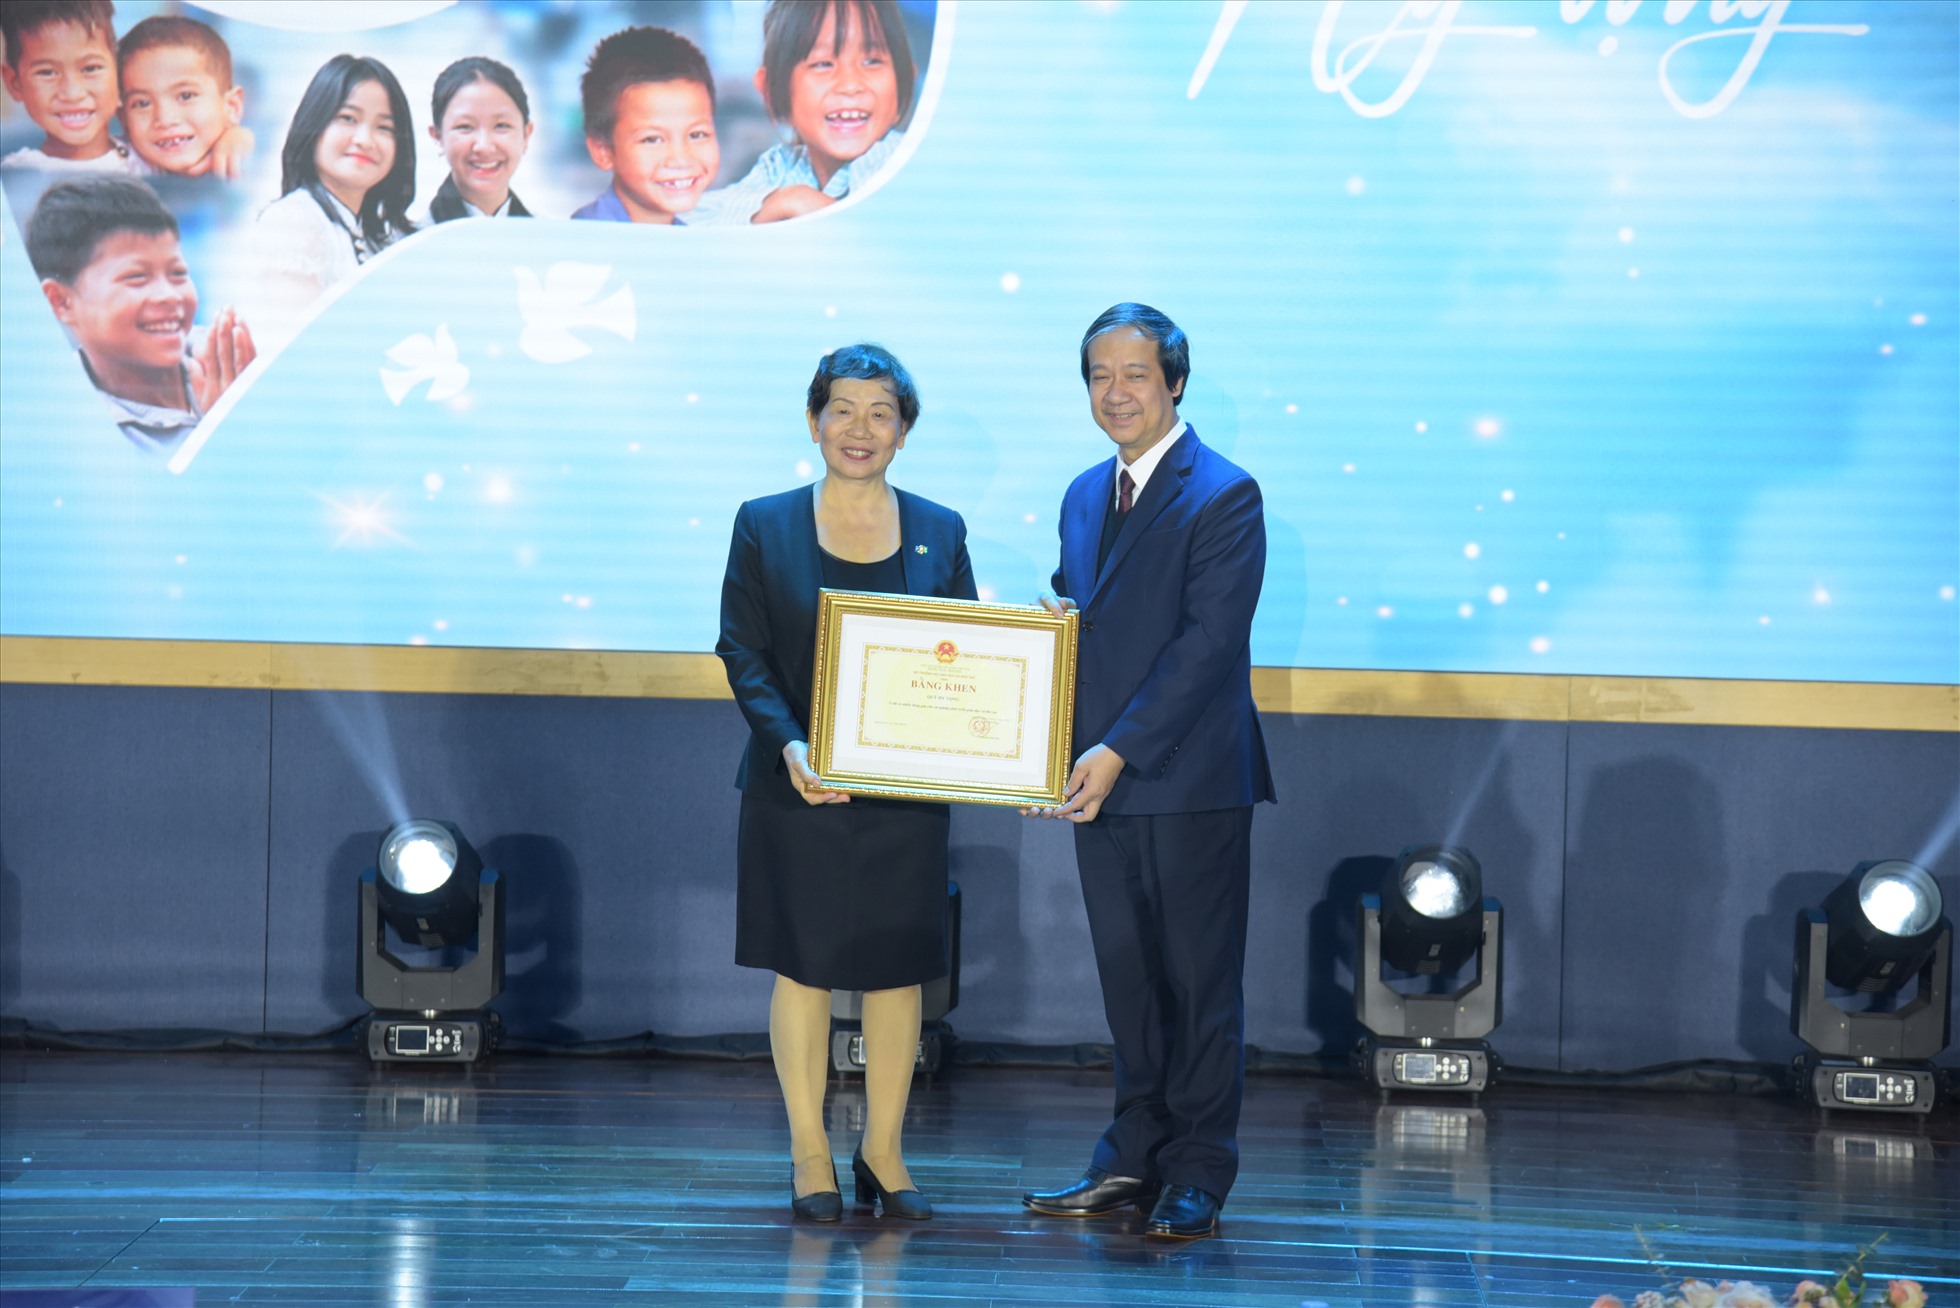 Bà Trương Thanh Thanh - Chủ tịch Hội đồng quản lý Quỹ nhận Bằng khen từ Bộ trưởng Bộ GD&ĐT Nguyễn Kim Sơn. Ảnh: Ban tổ chức